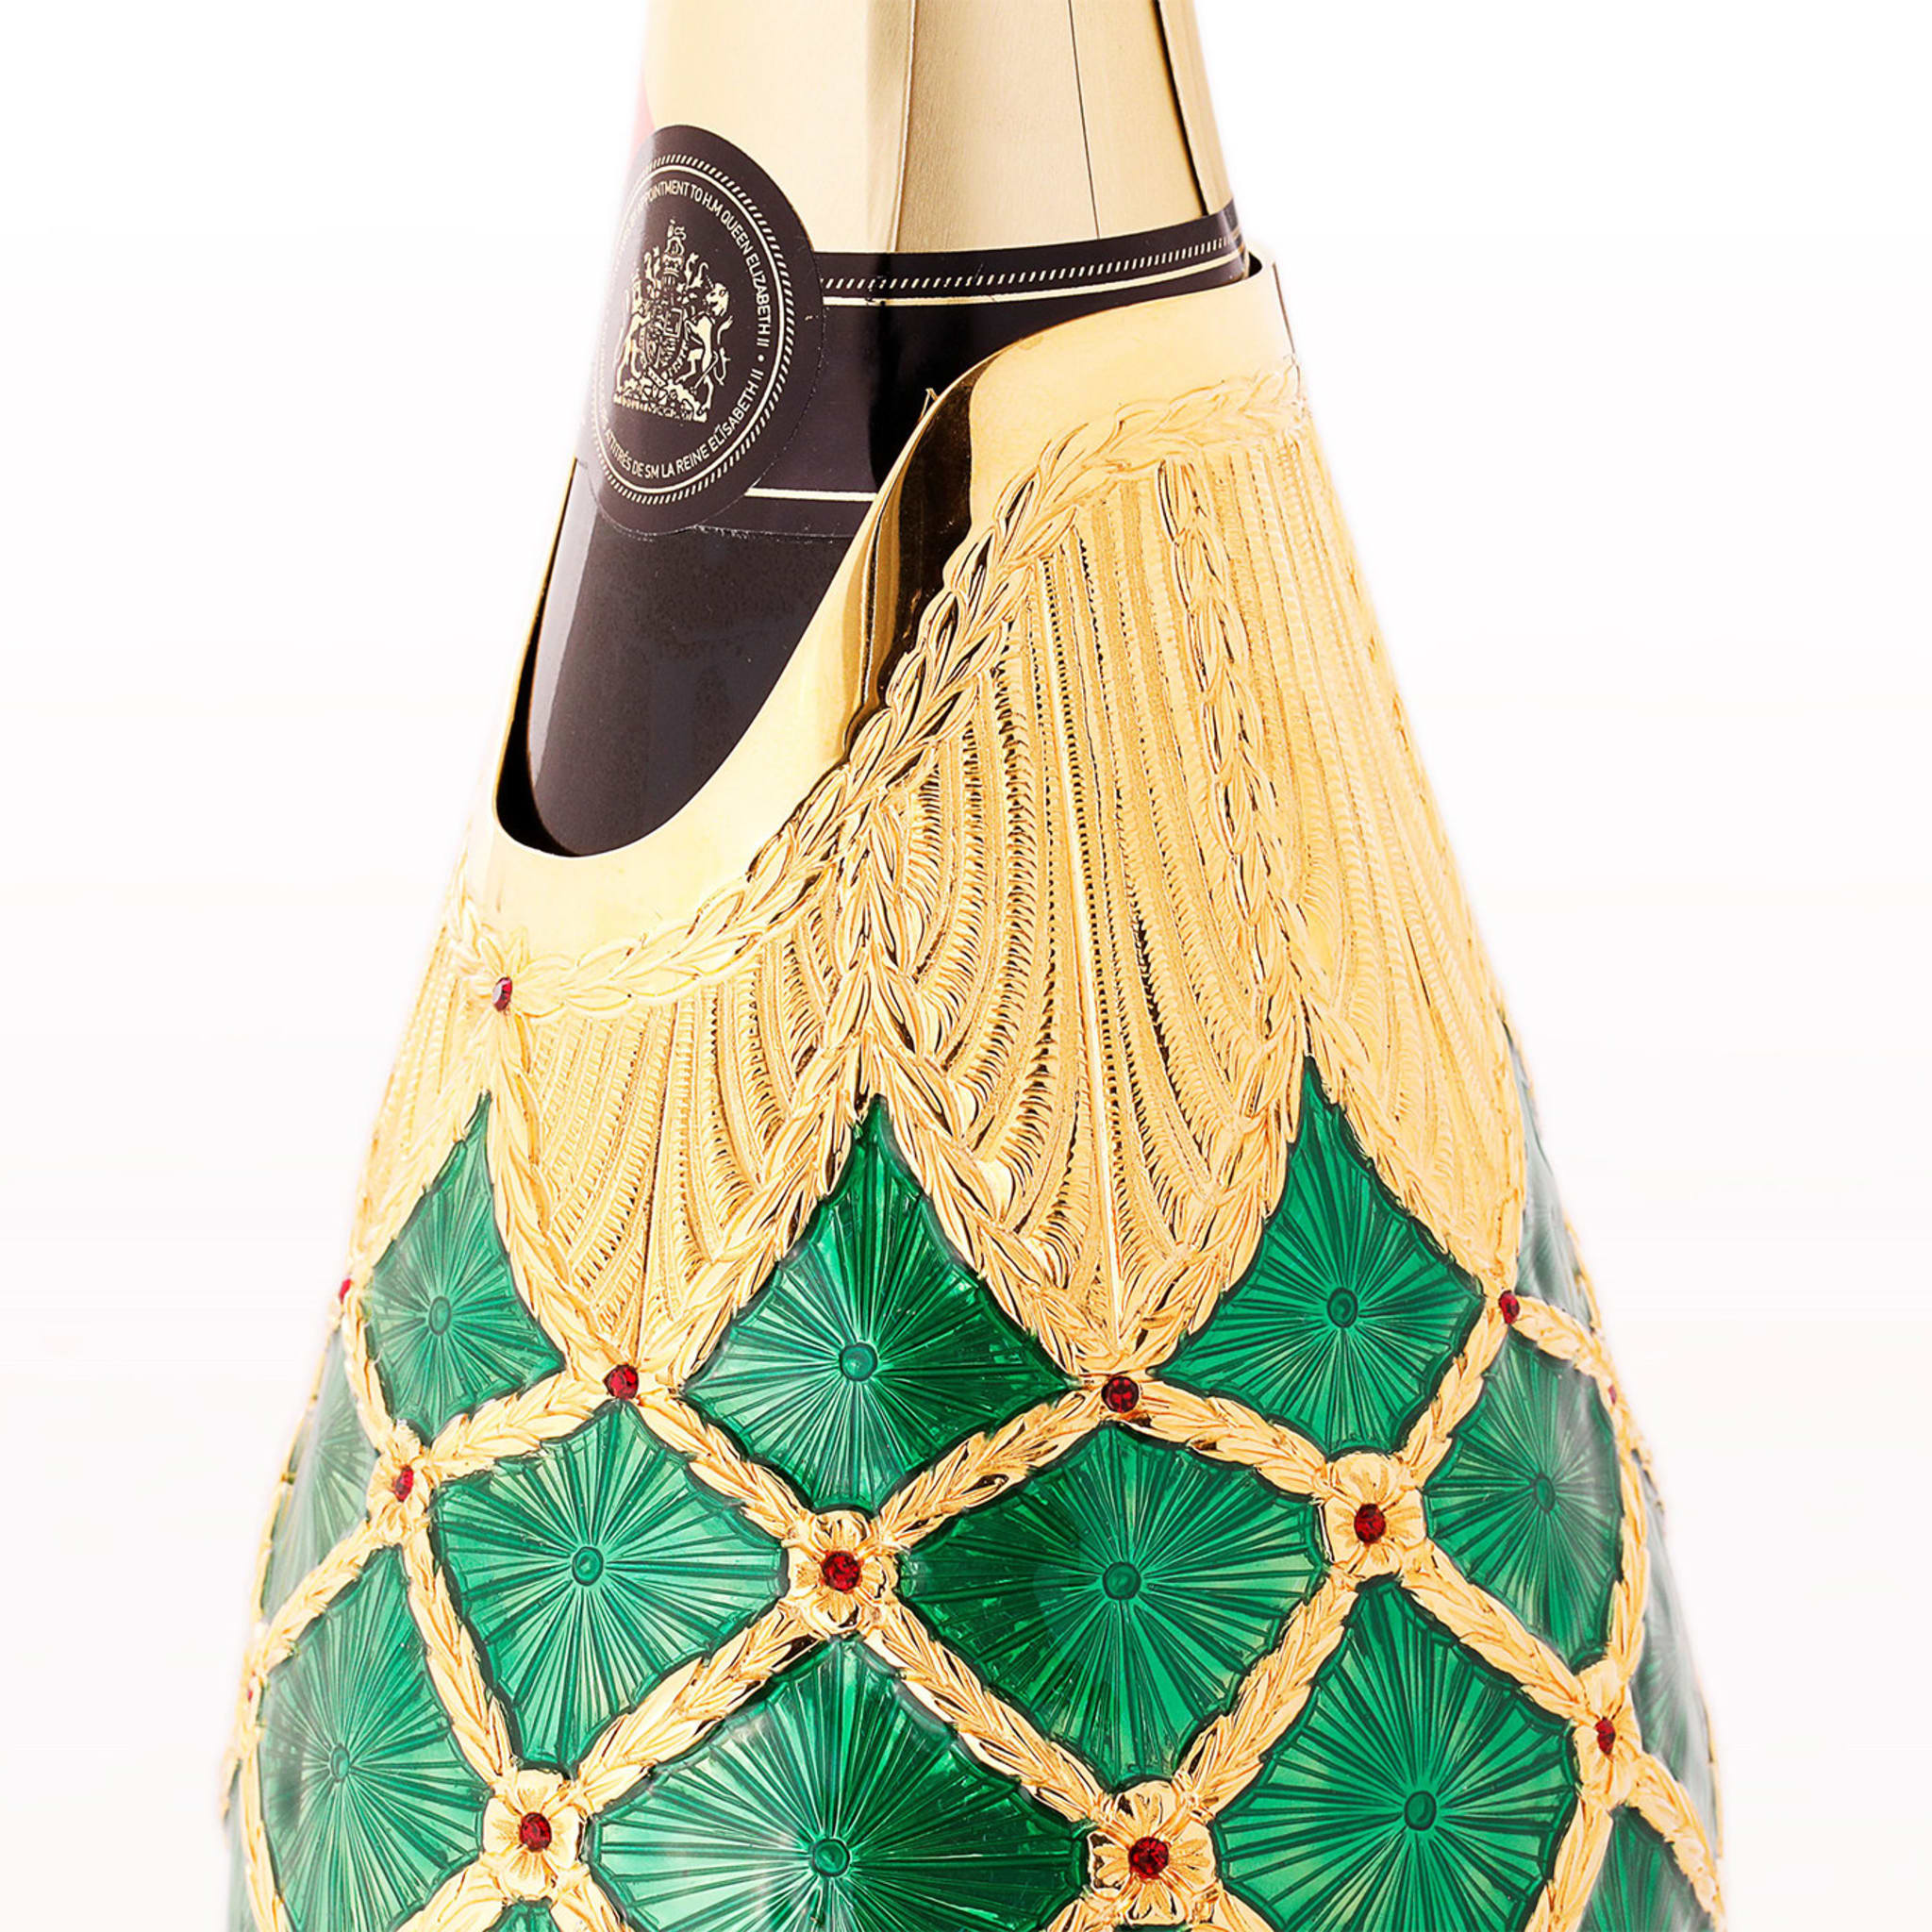 Cubierta de champán esmeralda de Stefano Vigni - Vista alternativa 1